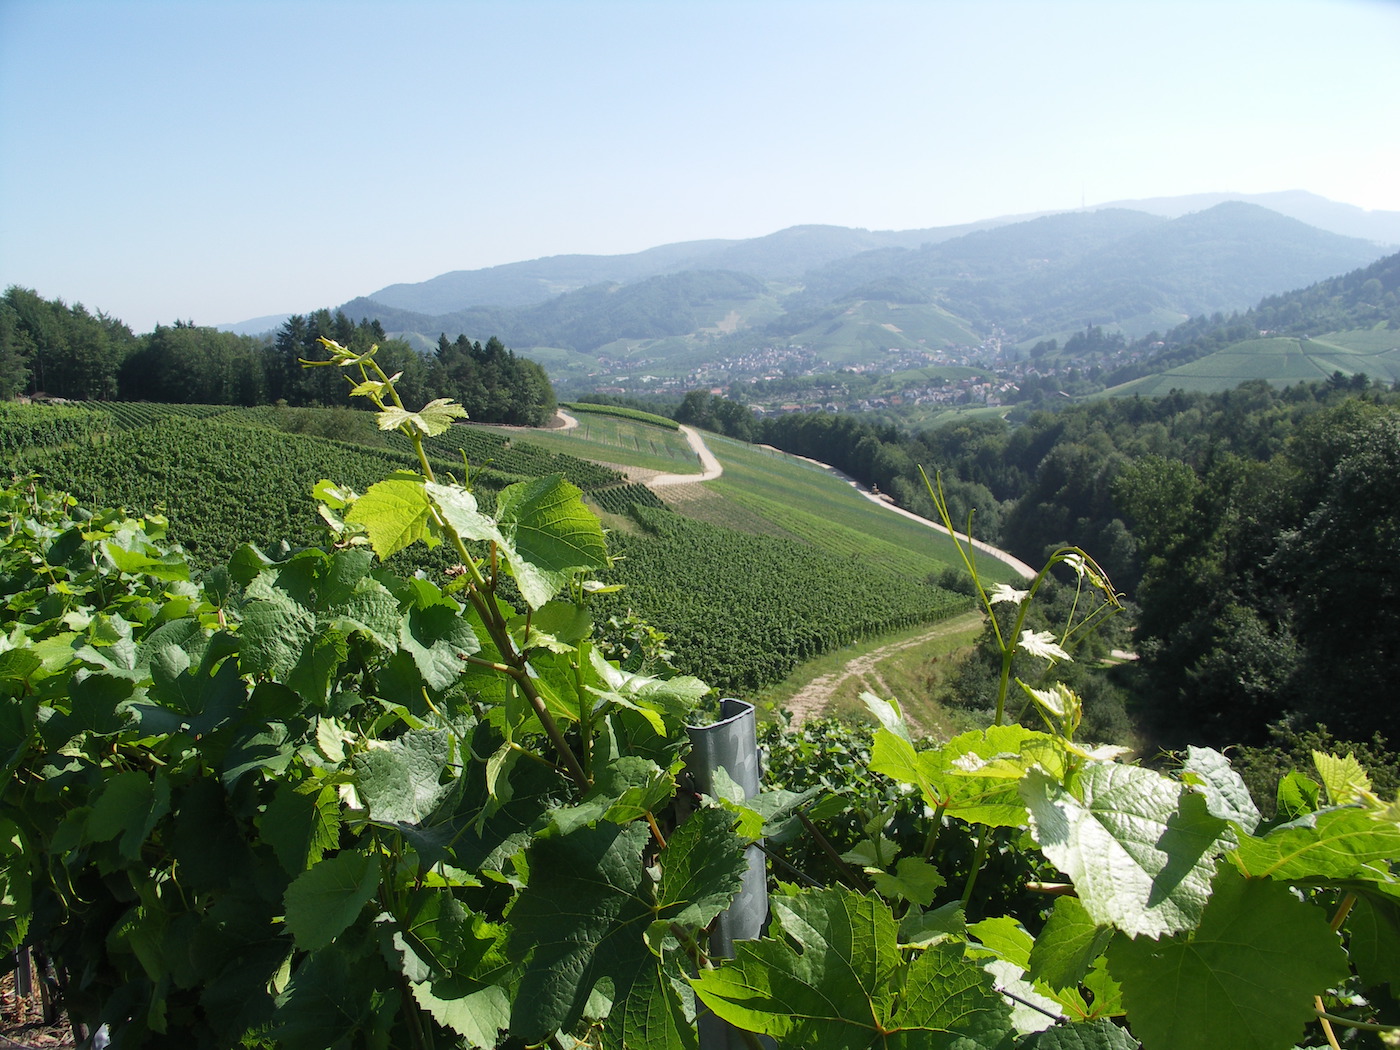 Blick auf Weinreben, die sich die Hänge hinaufziehen, und auf ein Tal  mit einem Dorf, Waldulm, im Hintergrund, bei diesigem Wetter.